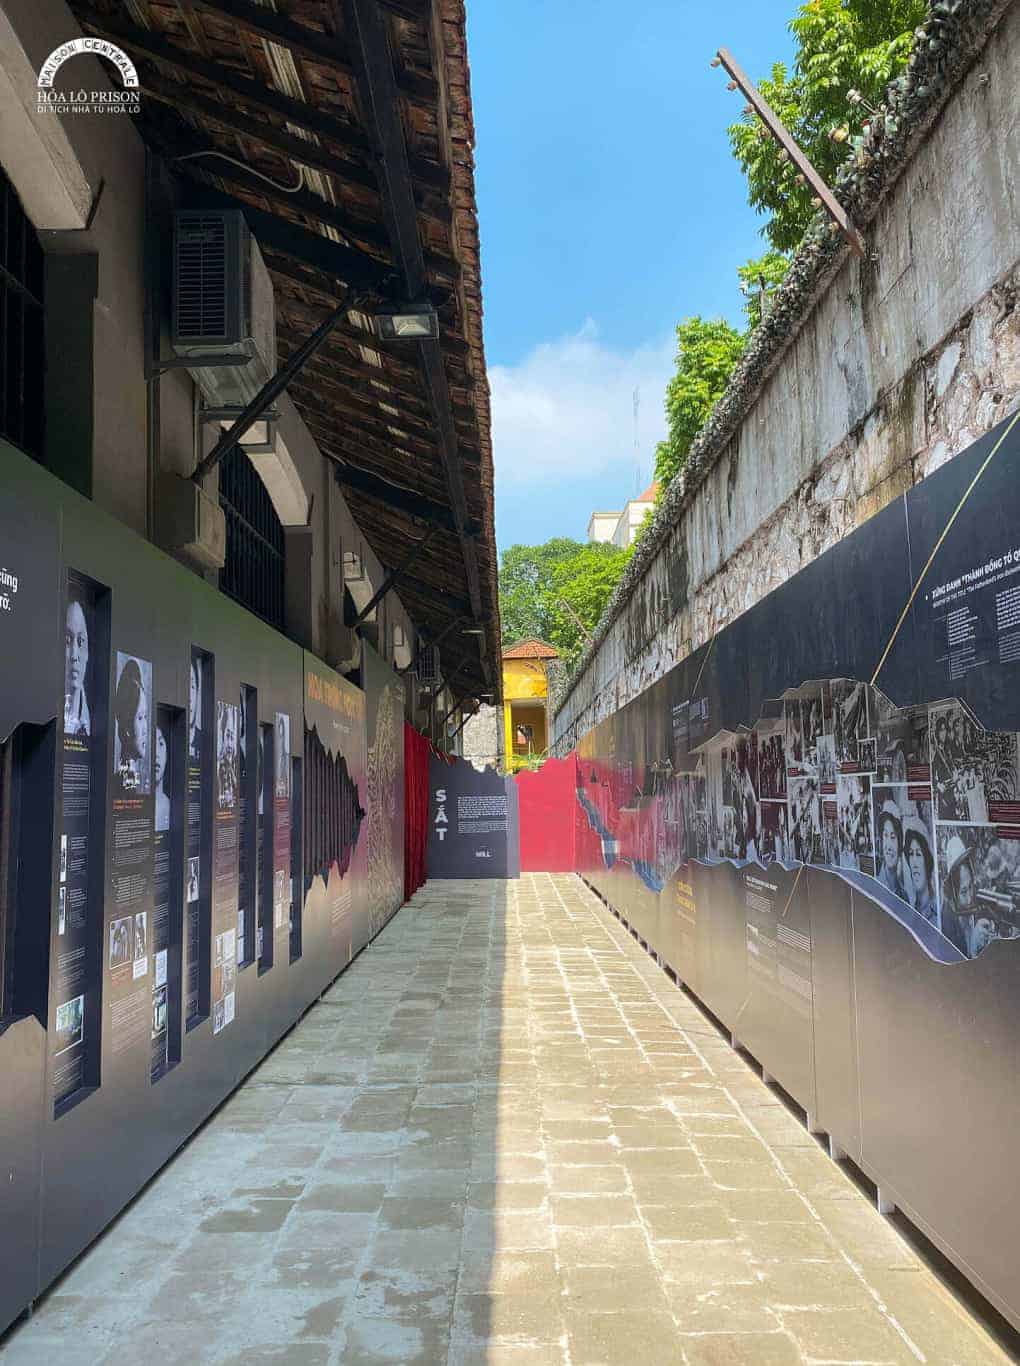 Tại Hà Nội, di tích chưa mở cửa trở lại. Trên ảnh là trưng bày chuyên đề "Sắt - Son" ở di tích Nhà tù Hỏa Lò. Ảnh: Di tích Nhà tù Hỏa Lò